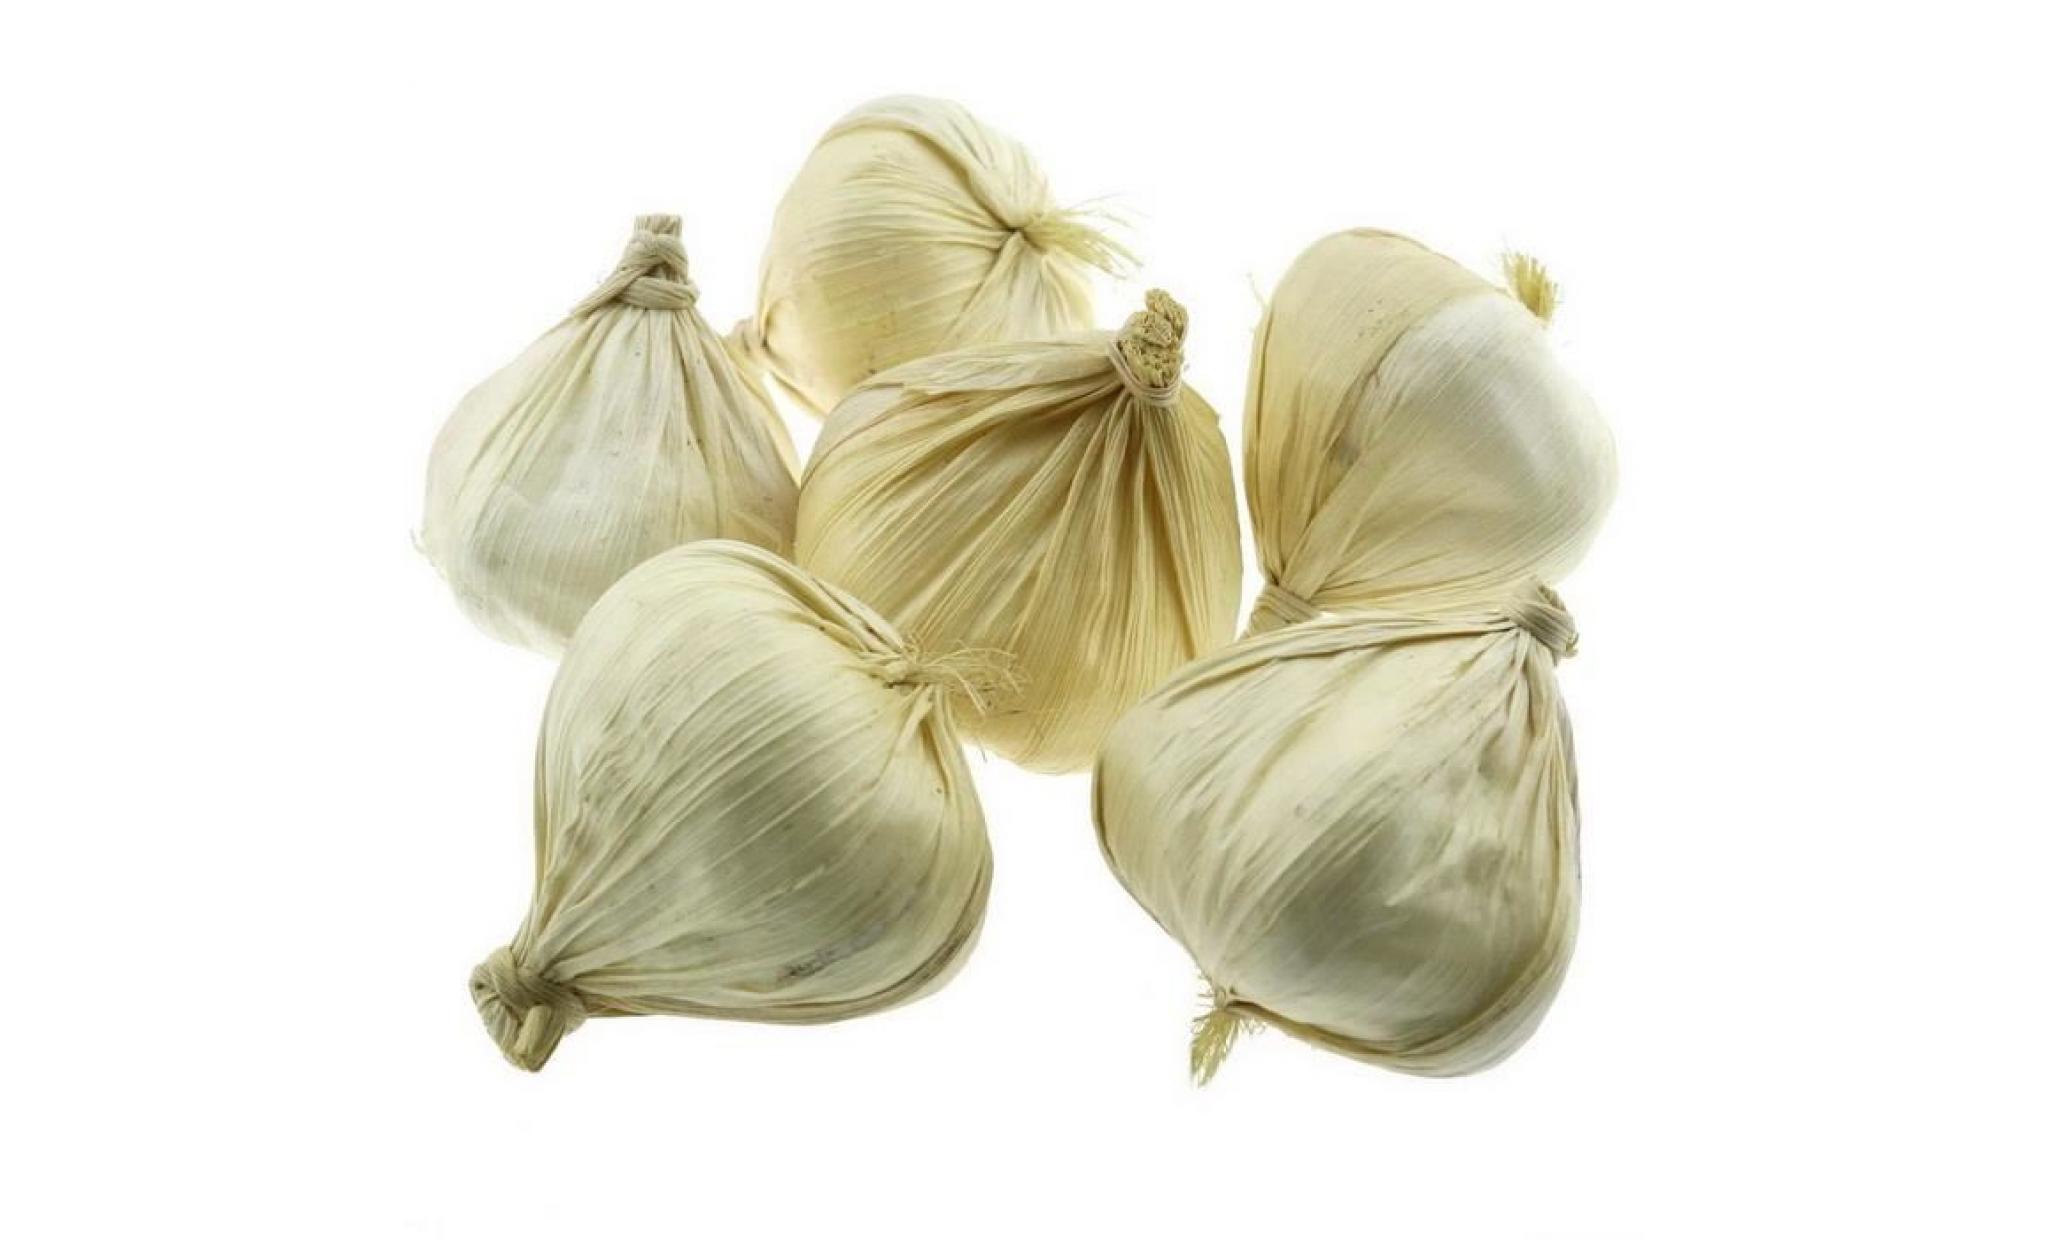 ukerdo 6 pcs artificiel blanc garlic décoration faux légume accueil fête vacances afficher